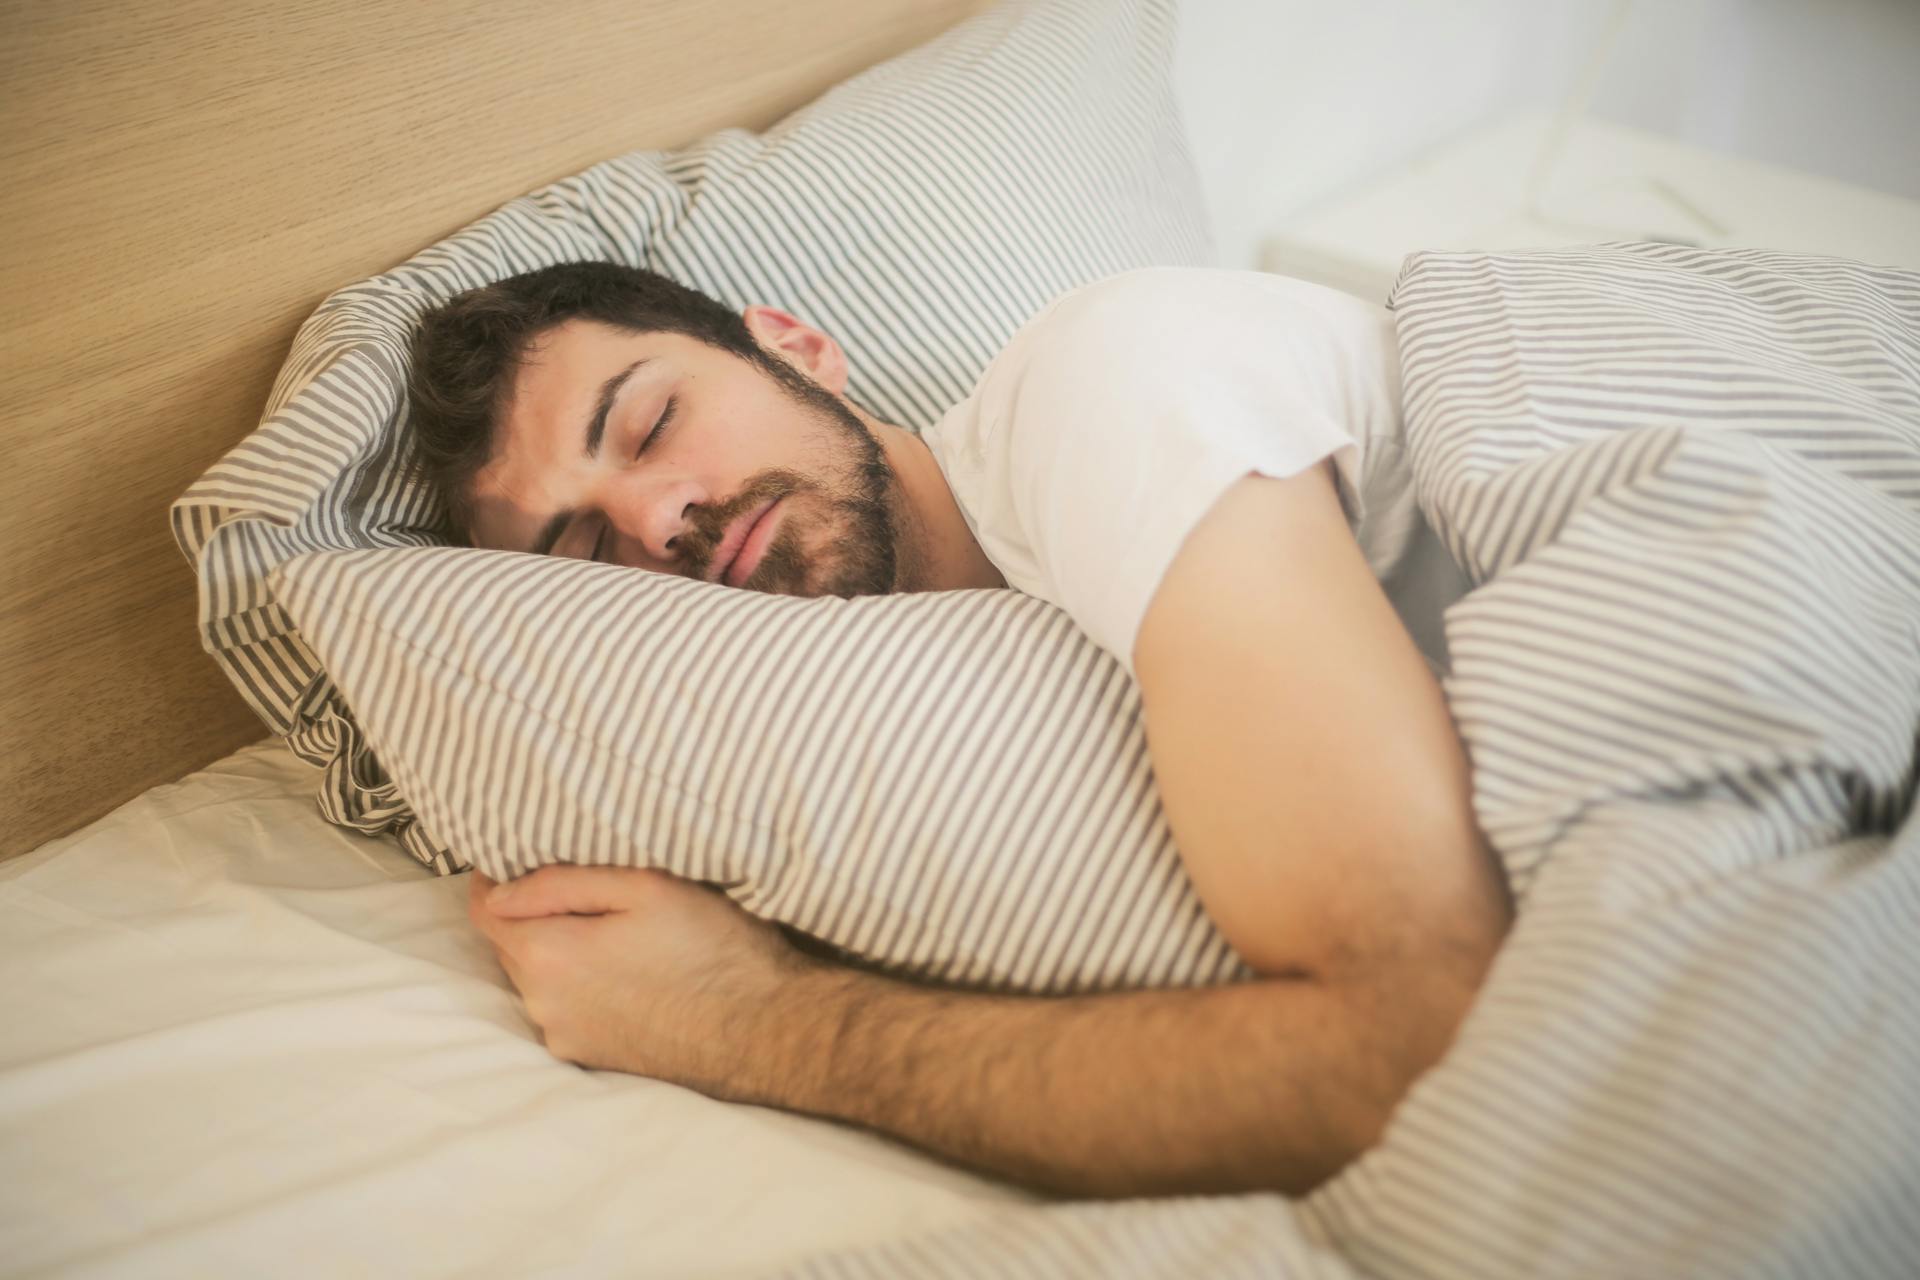 A man sleeping in bed | Source: Pexels